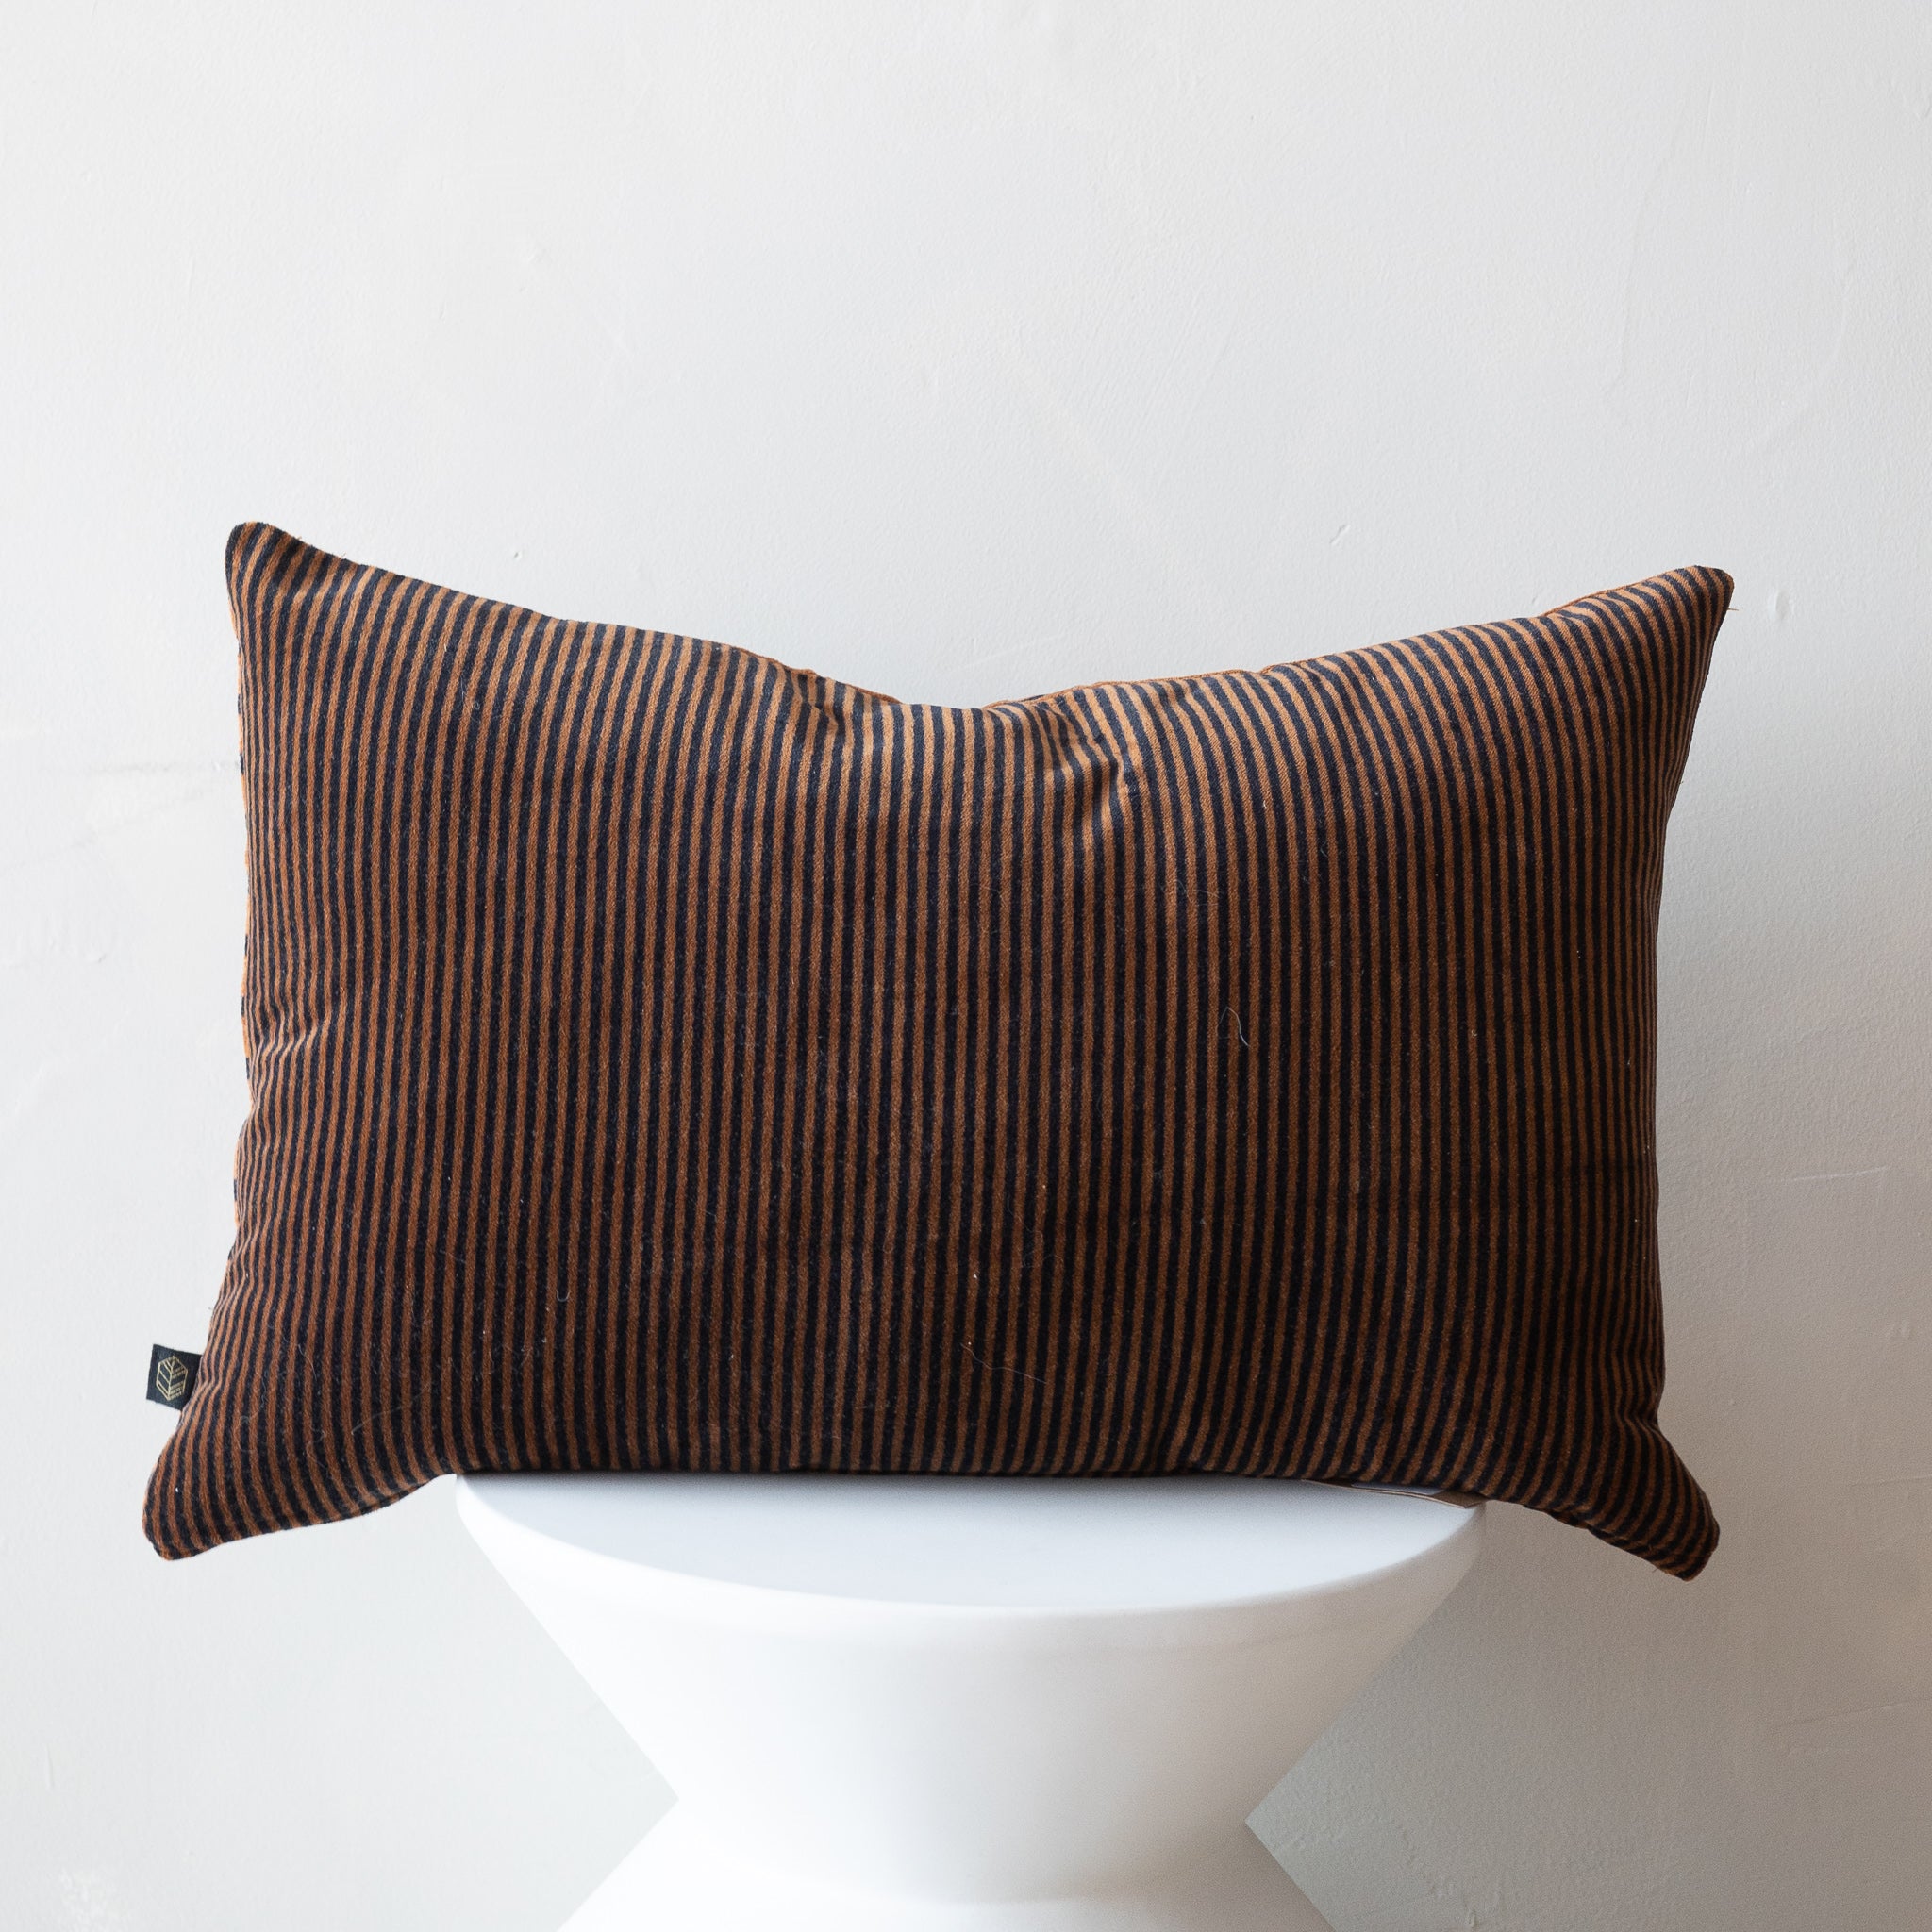 Sydney Decorative Pillow - Caramel